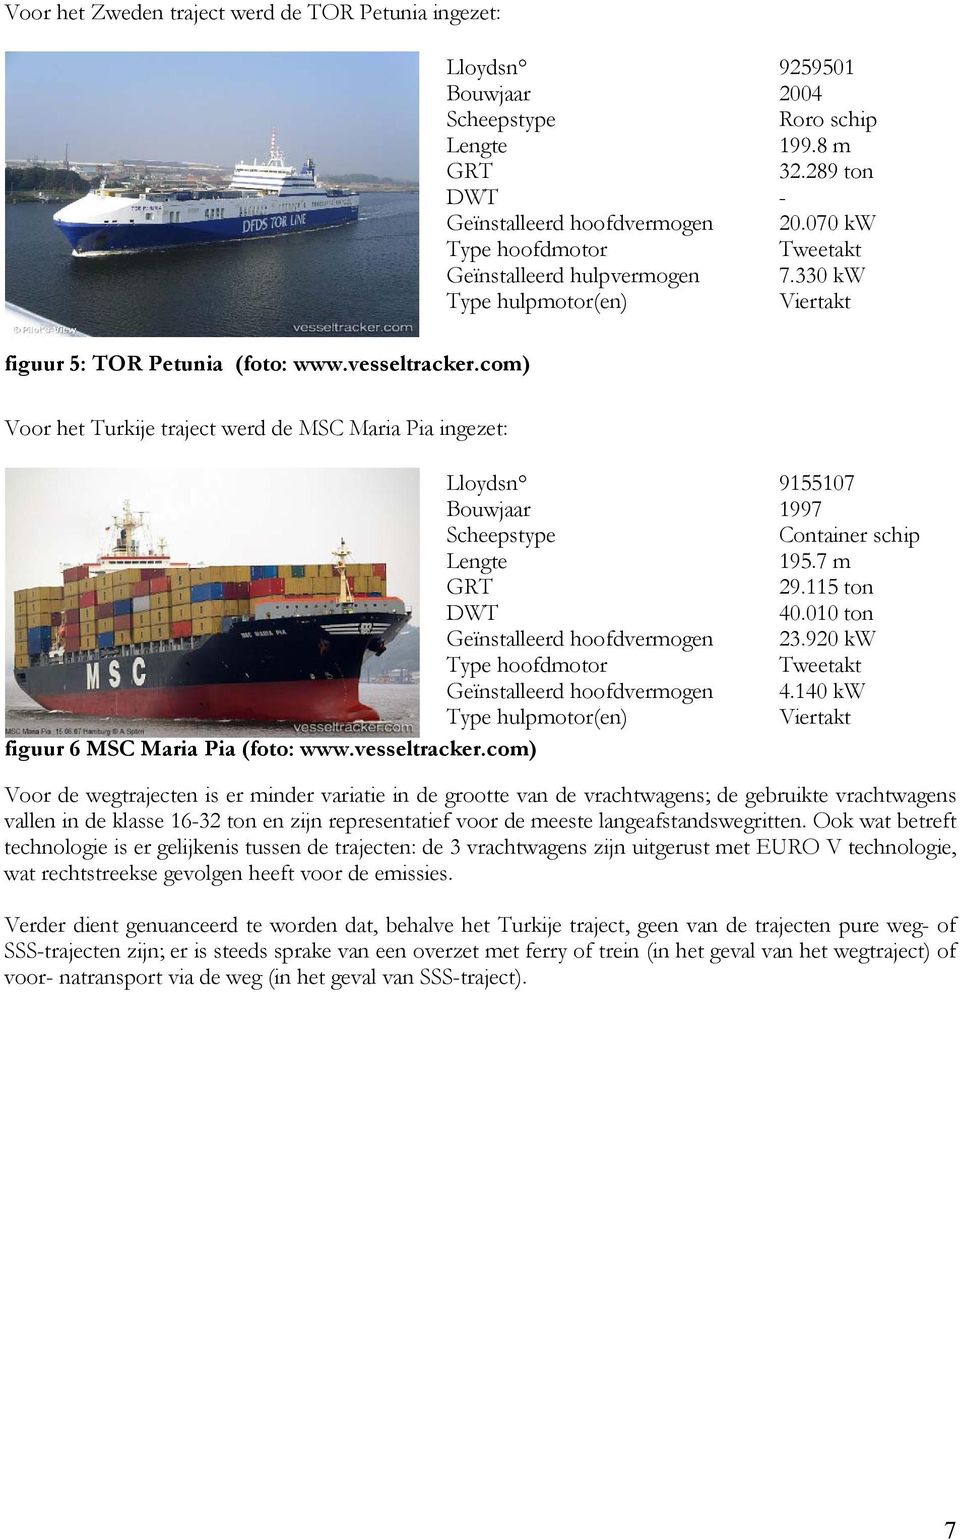 com) Voor het Turkije traject werd de MSC Maria Pia ingezet: Lloydsn 9155107 Bouwjaar 1997 Scheepstype Container schip Lengte 195.7 m GRT 29.115 ton DWT 40.010 ton Geïnstalleerd hoofdvermogen 23.